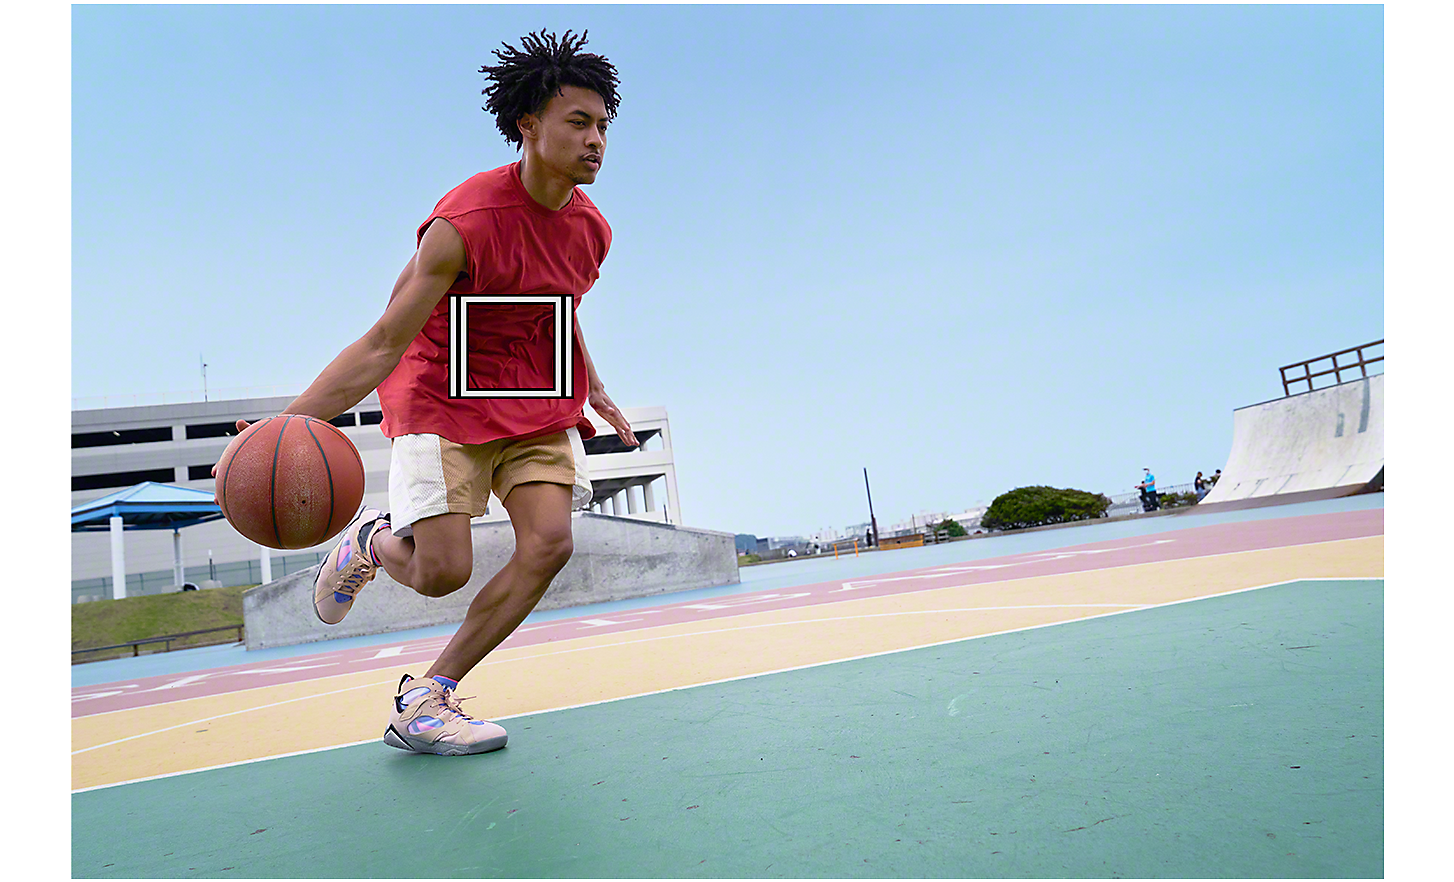 Un homme faisant des dribbles avec un ballon de basket, un carré blanc représentant le suivi d'objet